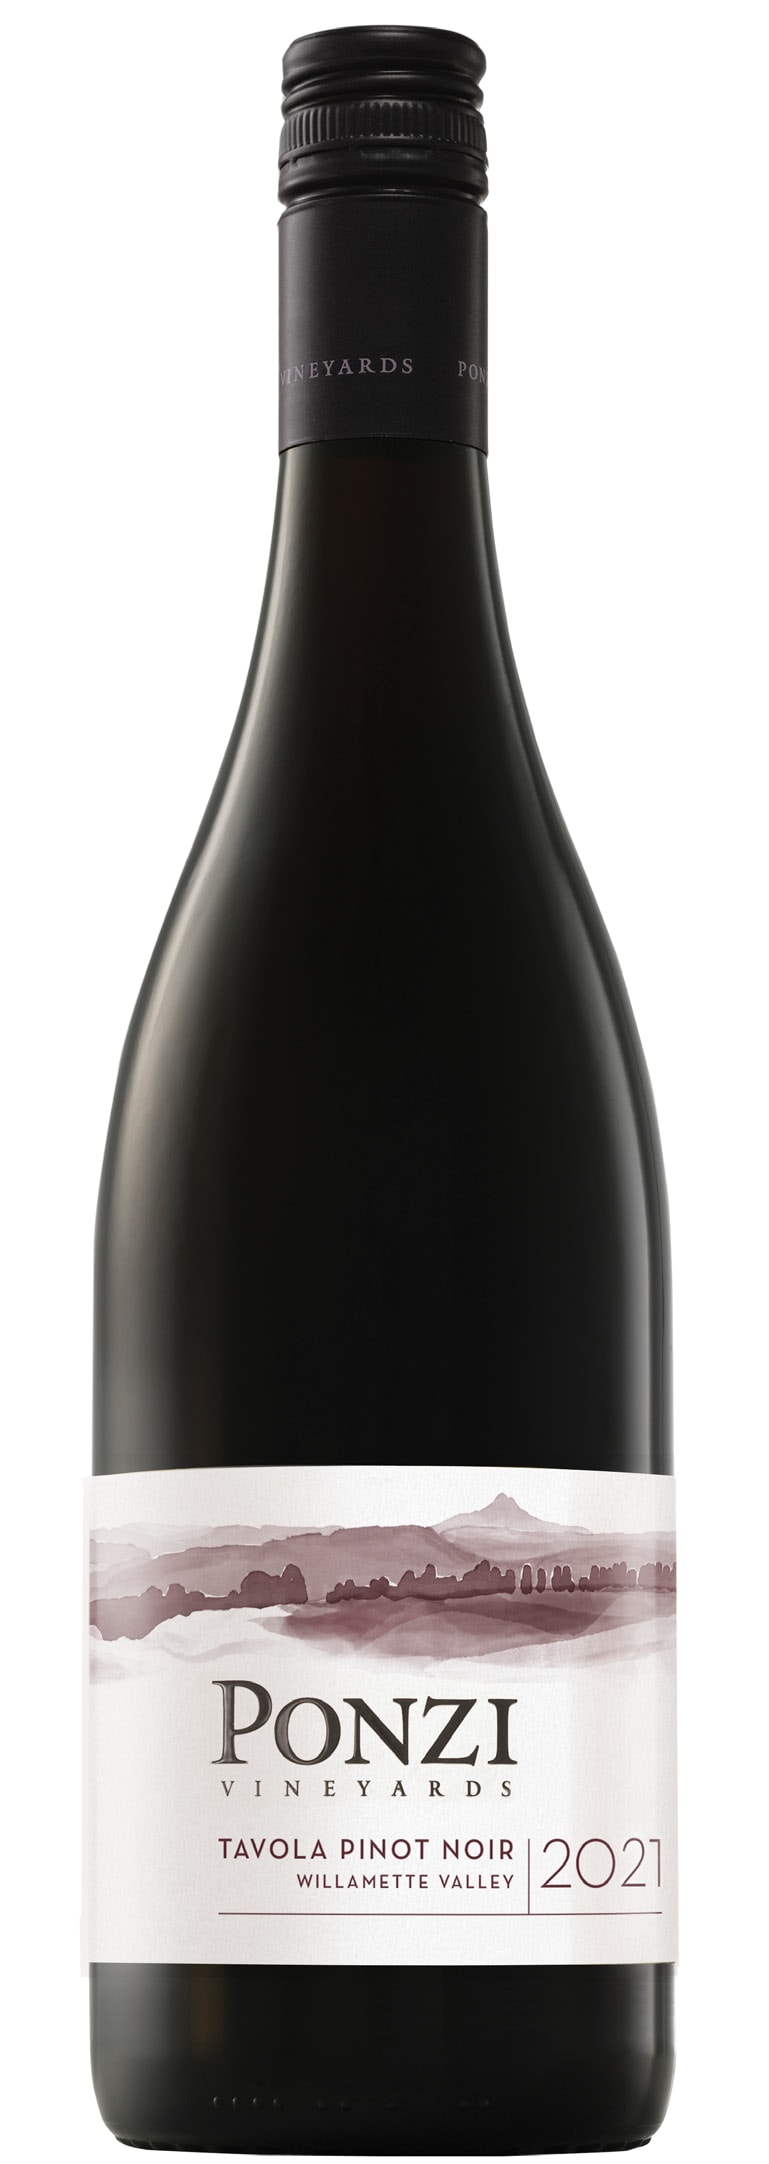 Ponzi - Pinot Noir Tavola 2021 (750)